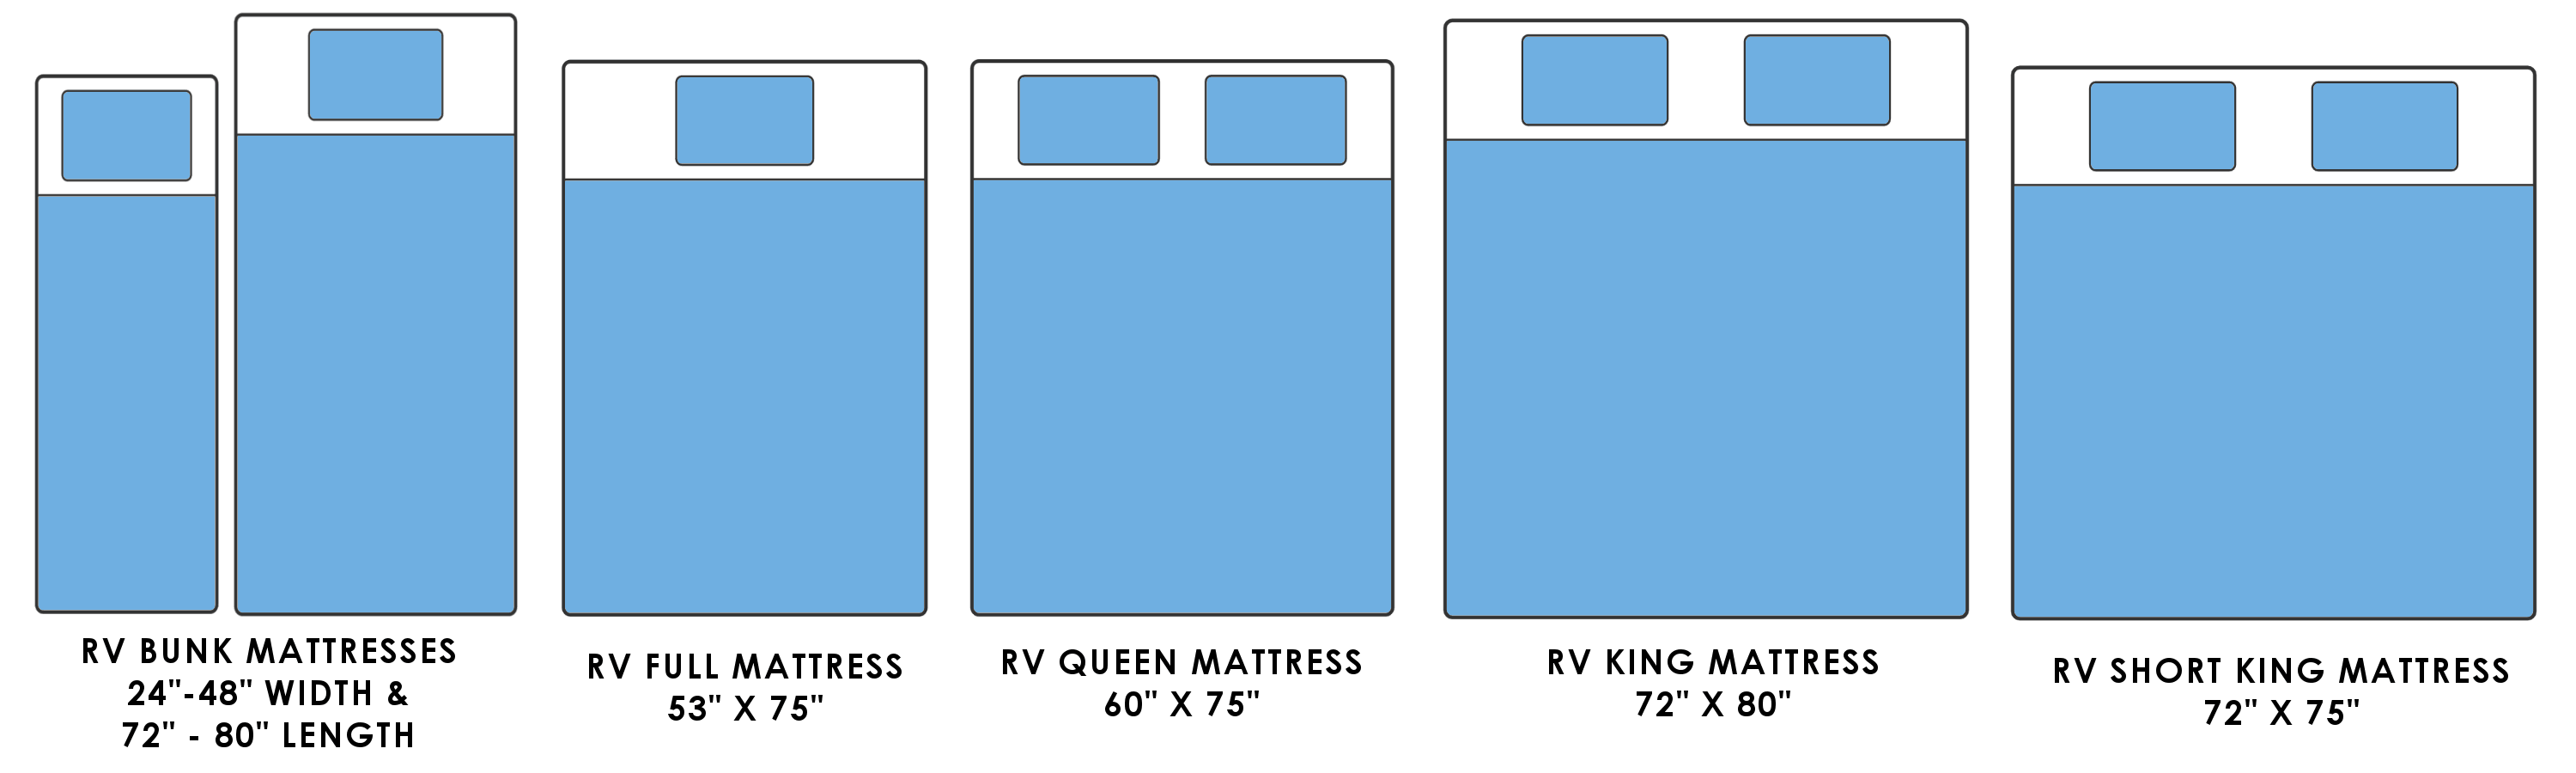 rv mattress sizes chart - Part.tscoreks.org